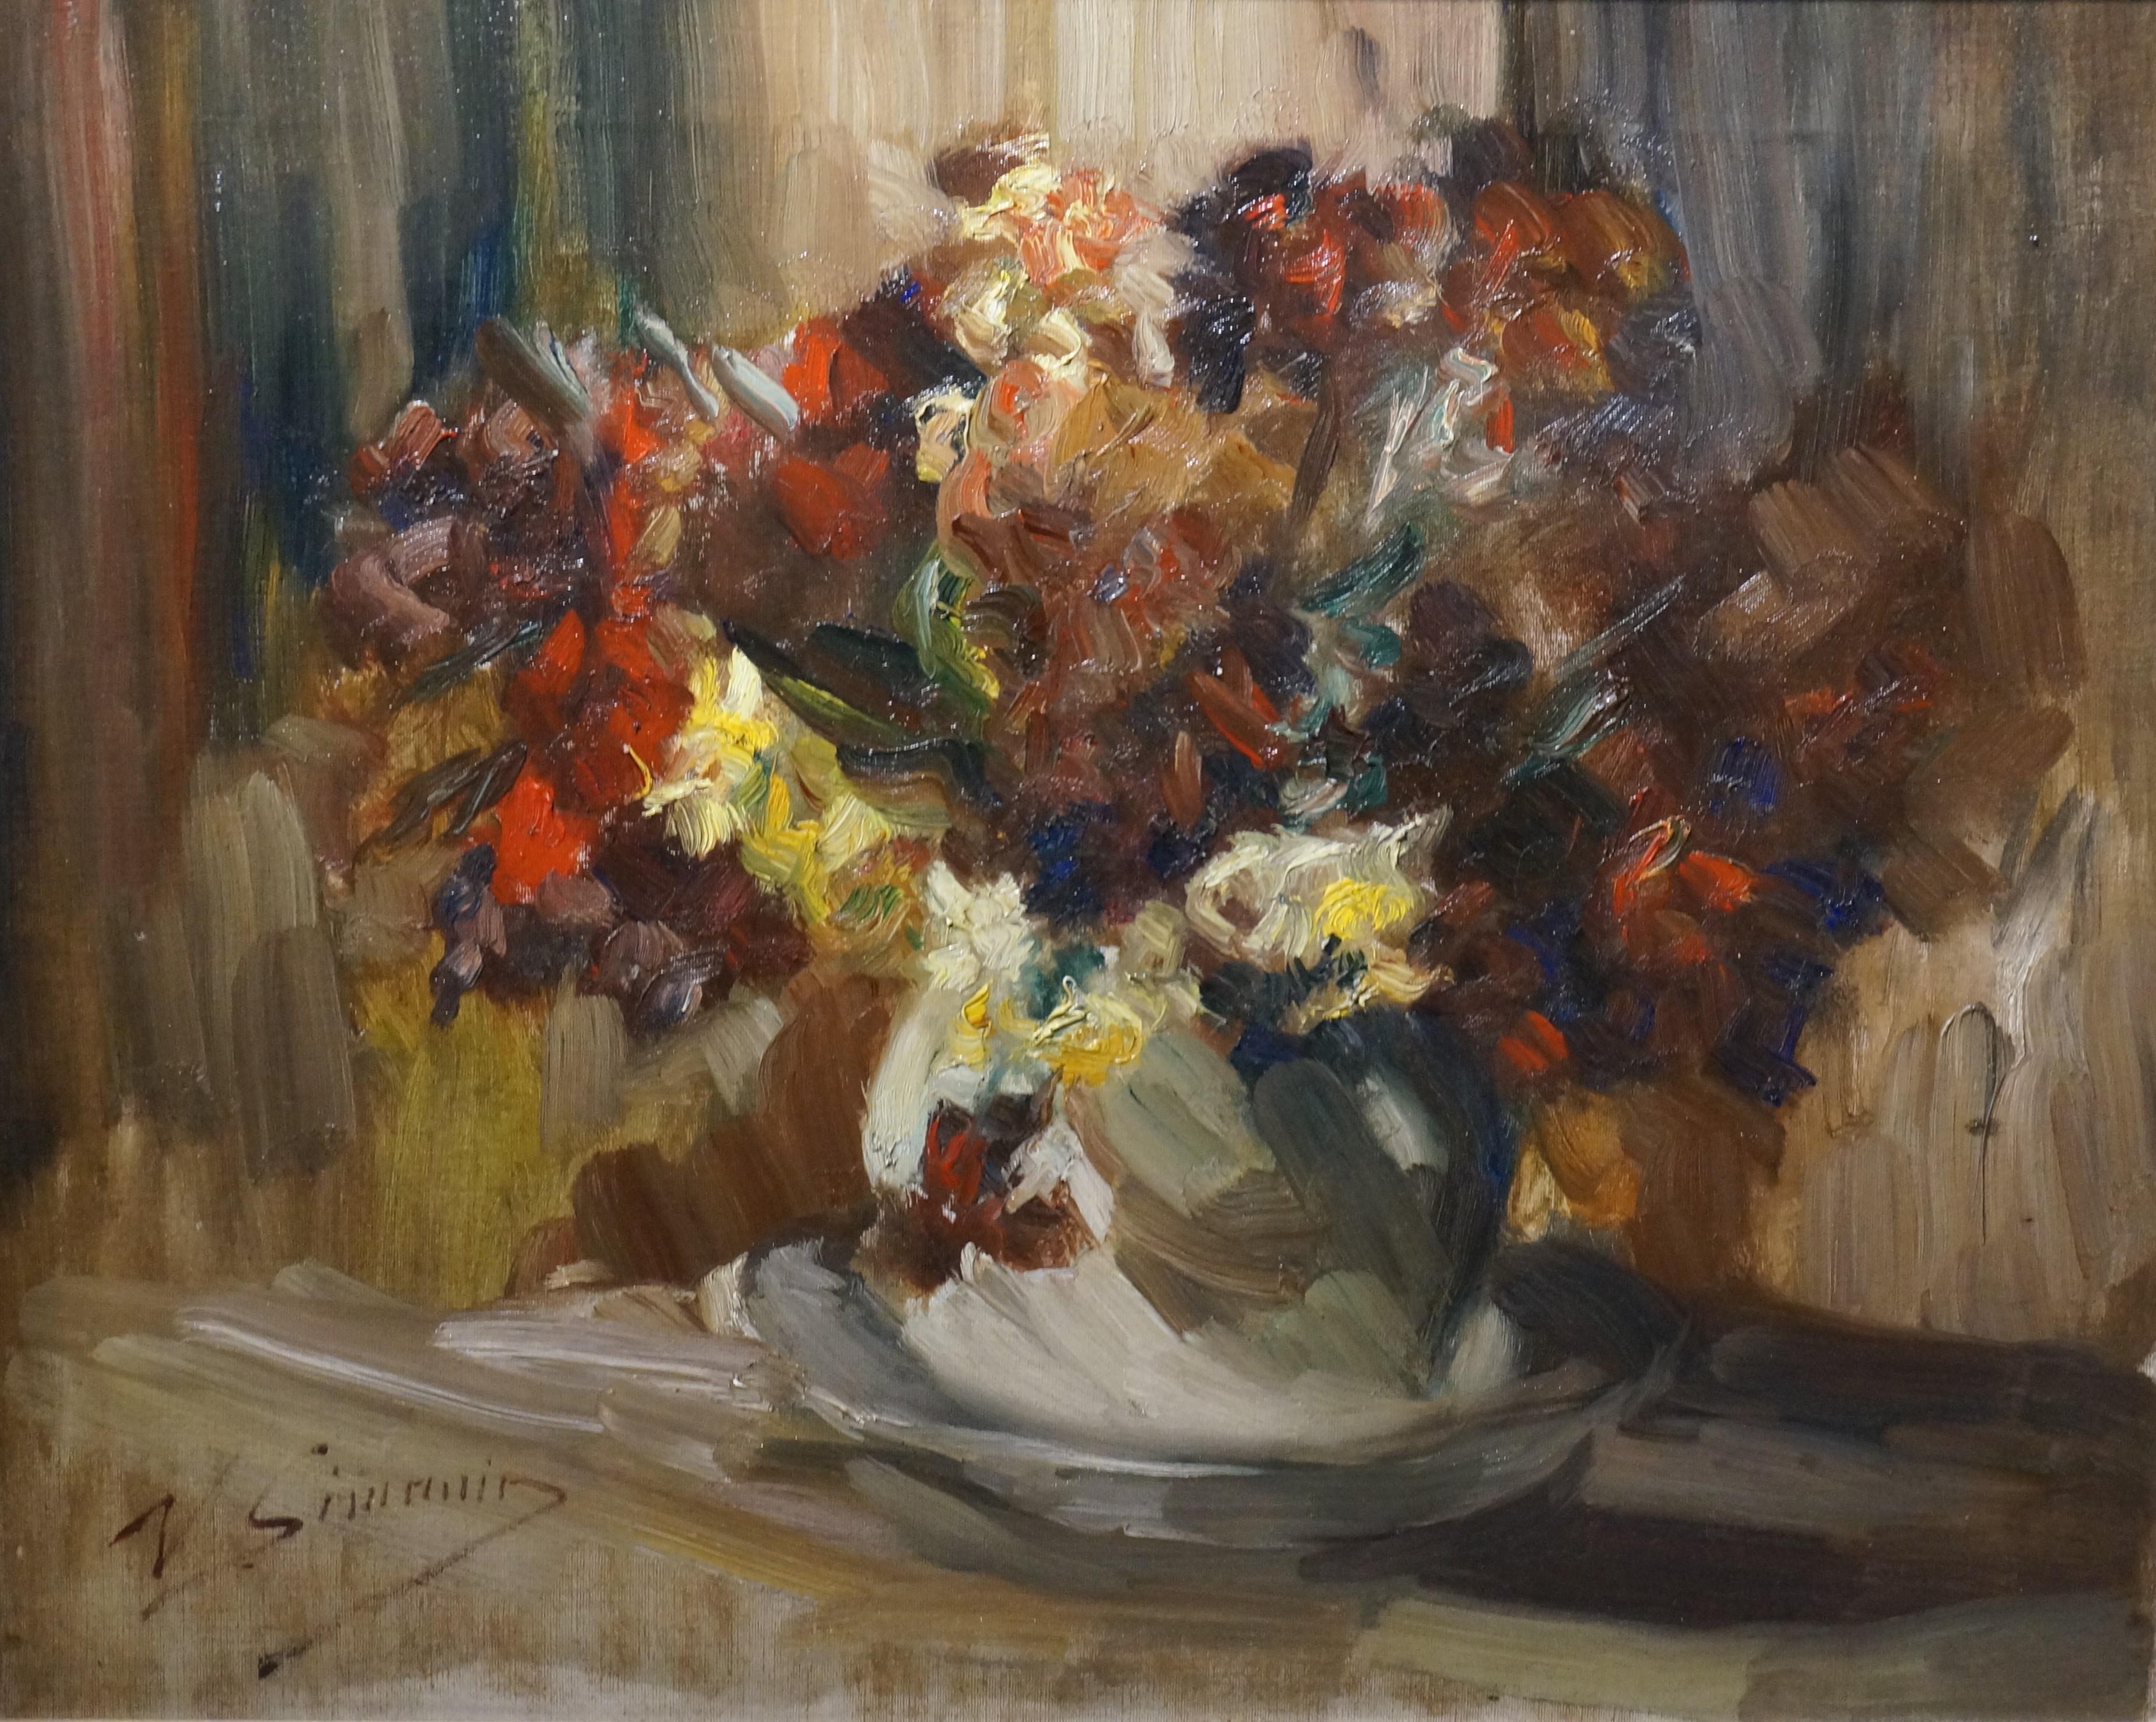 Peinture de style Stil-life de fleurs, Vicor Simonin, impressionniste, huile sur toile